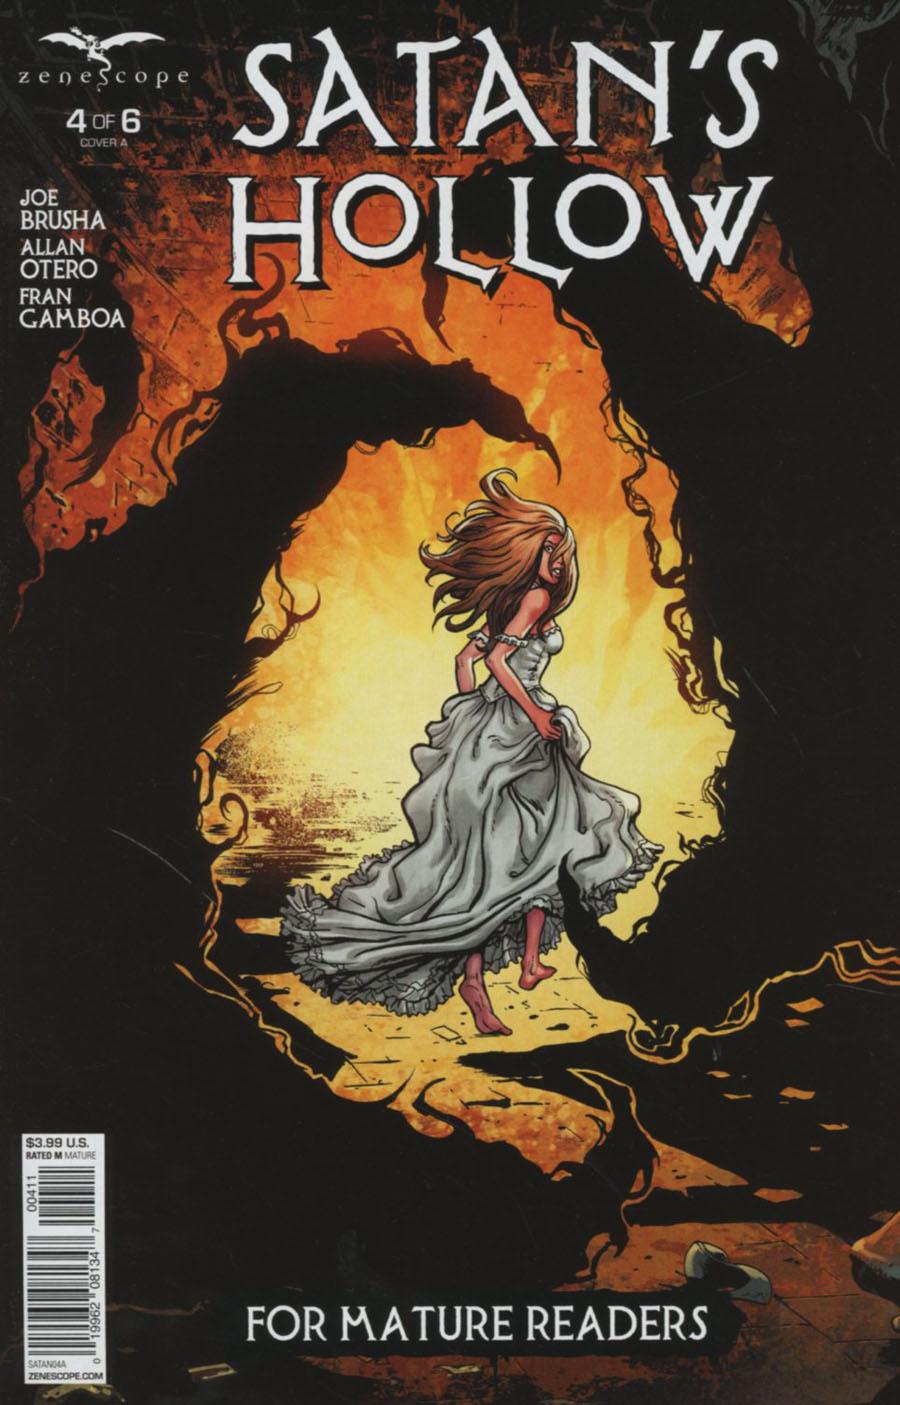 Grimm Fairy Tales Presents Satans Hollow Vol. 1 #4